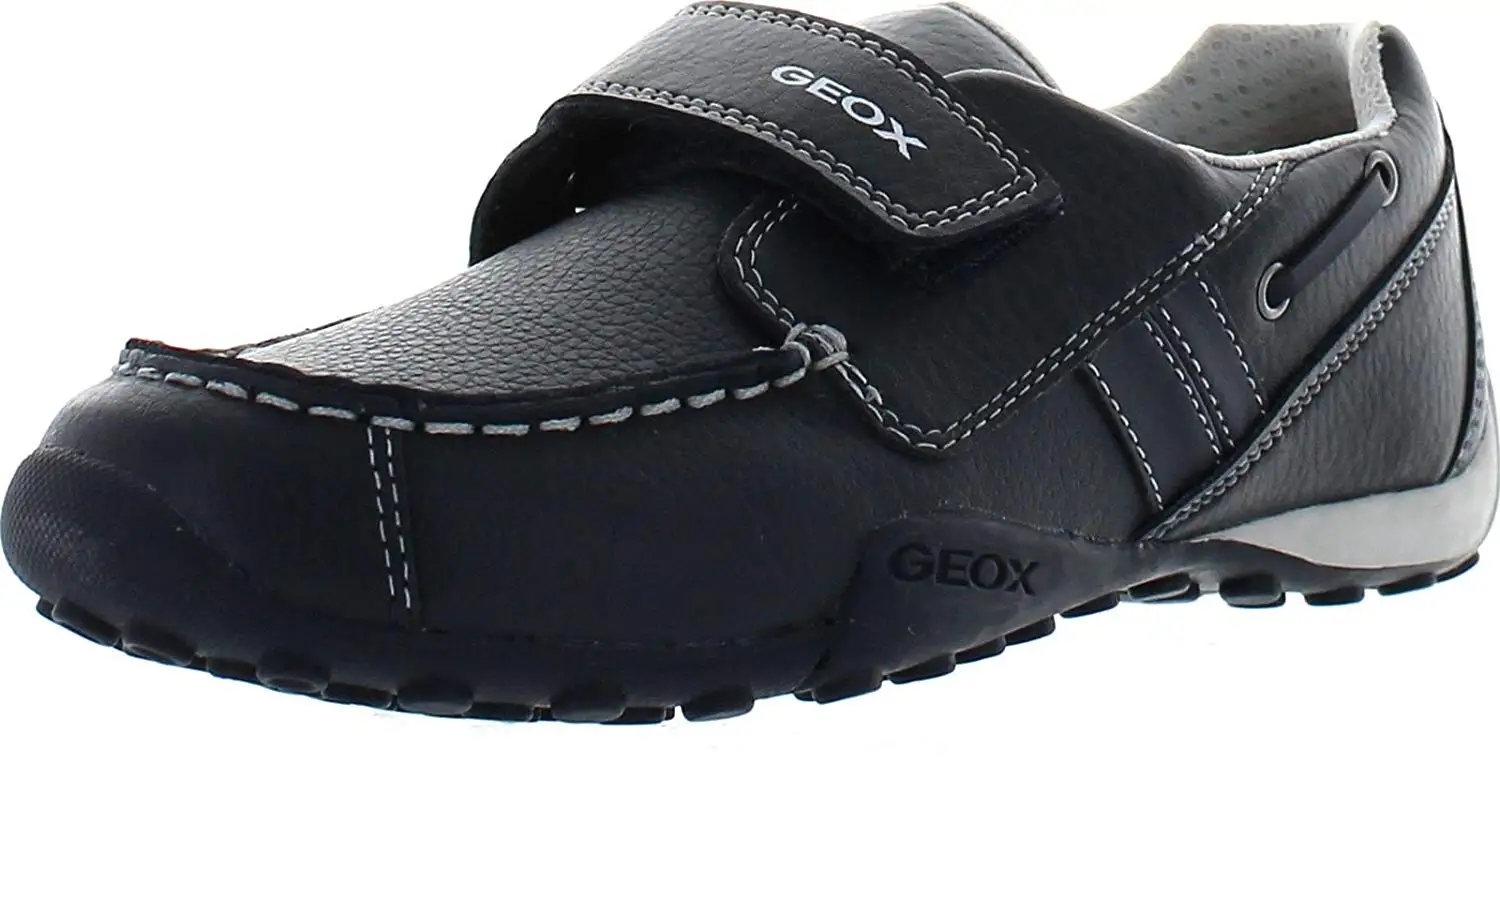 geox ladies walking shoes